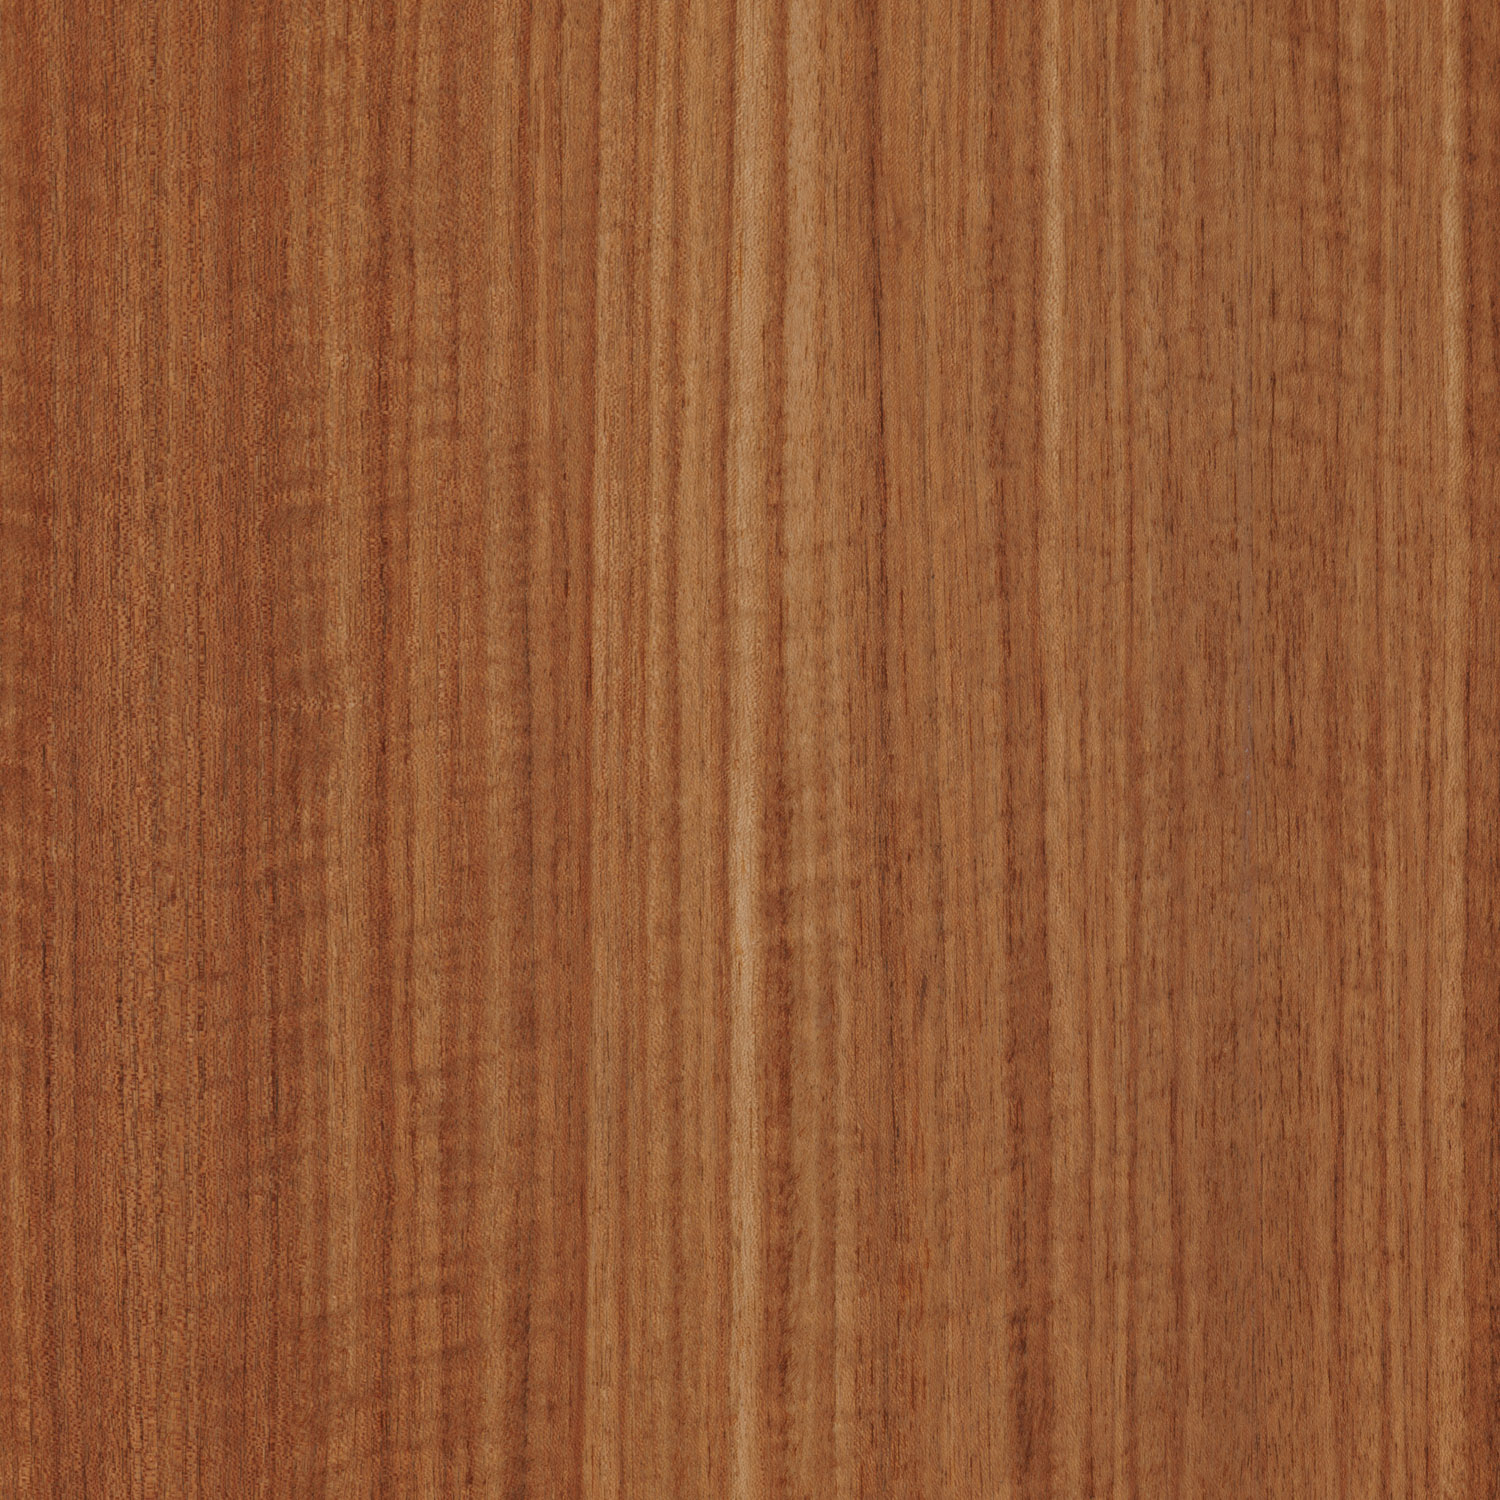 etimoe natural wood veneer panel